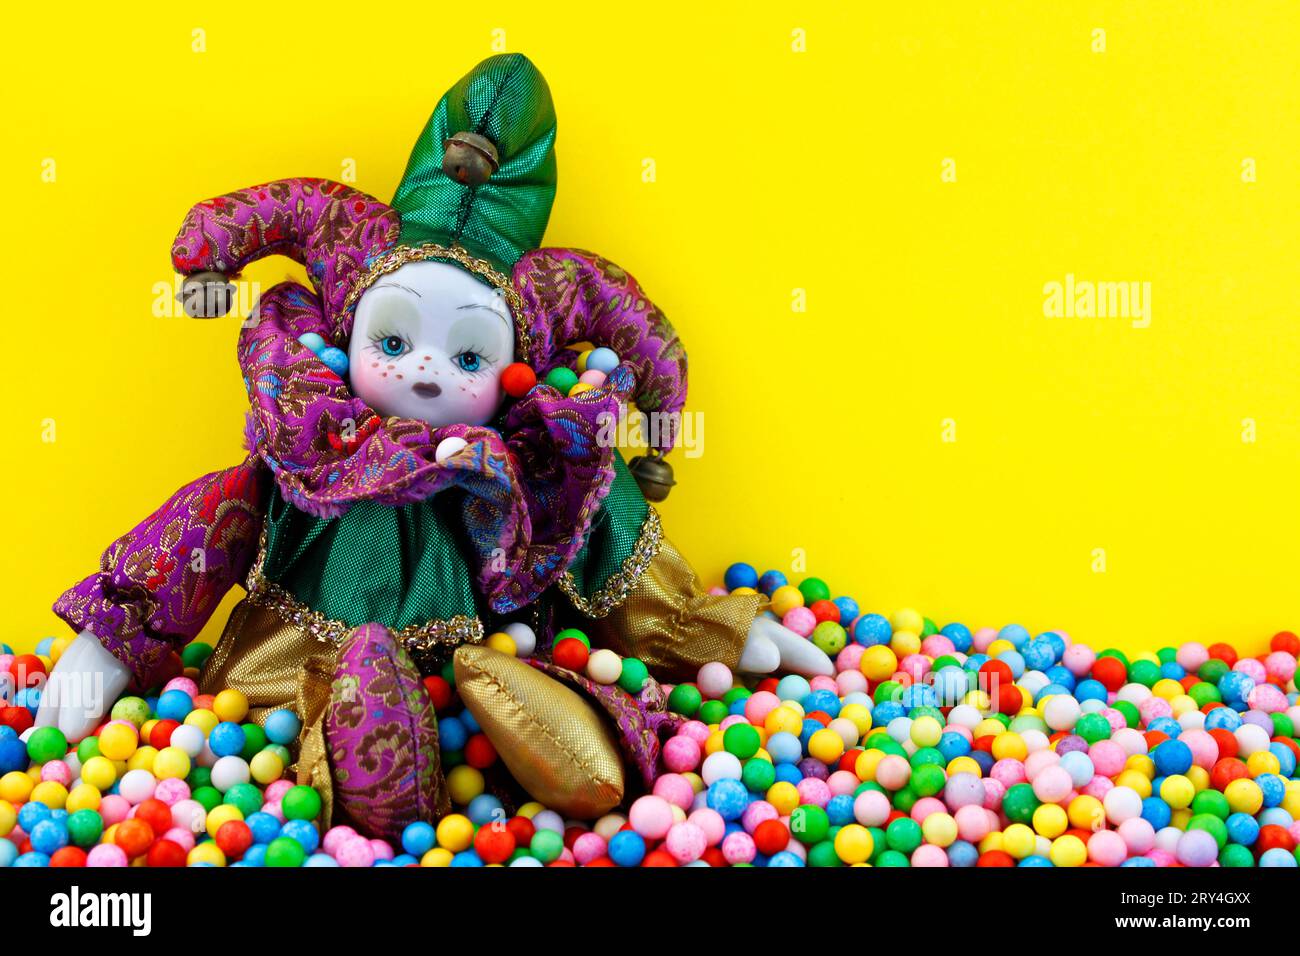 Wunderschöne Puppe aus Harlekin, Stoff und Keramik Stockfoto